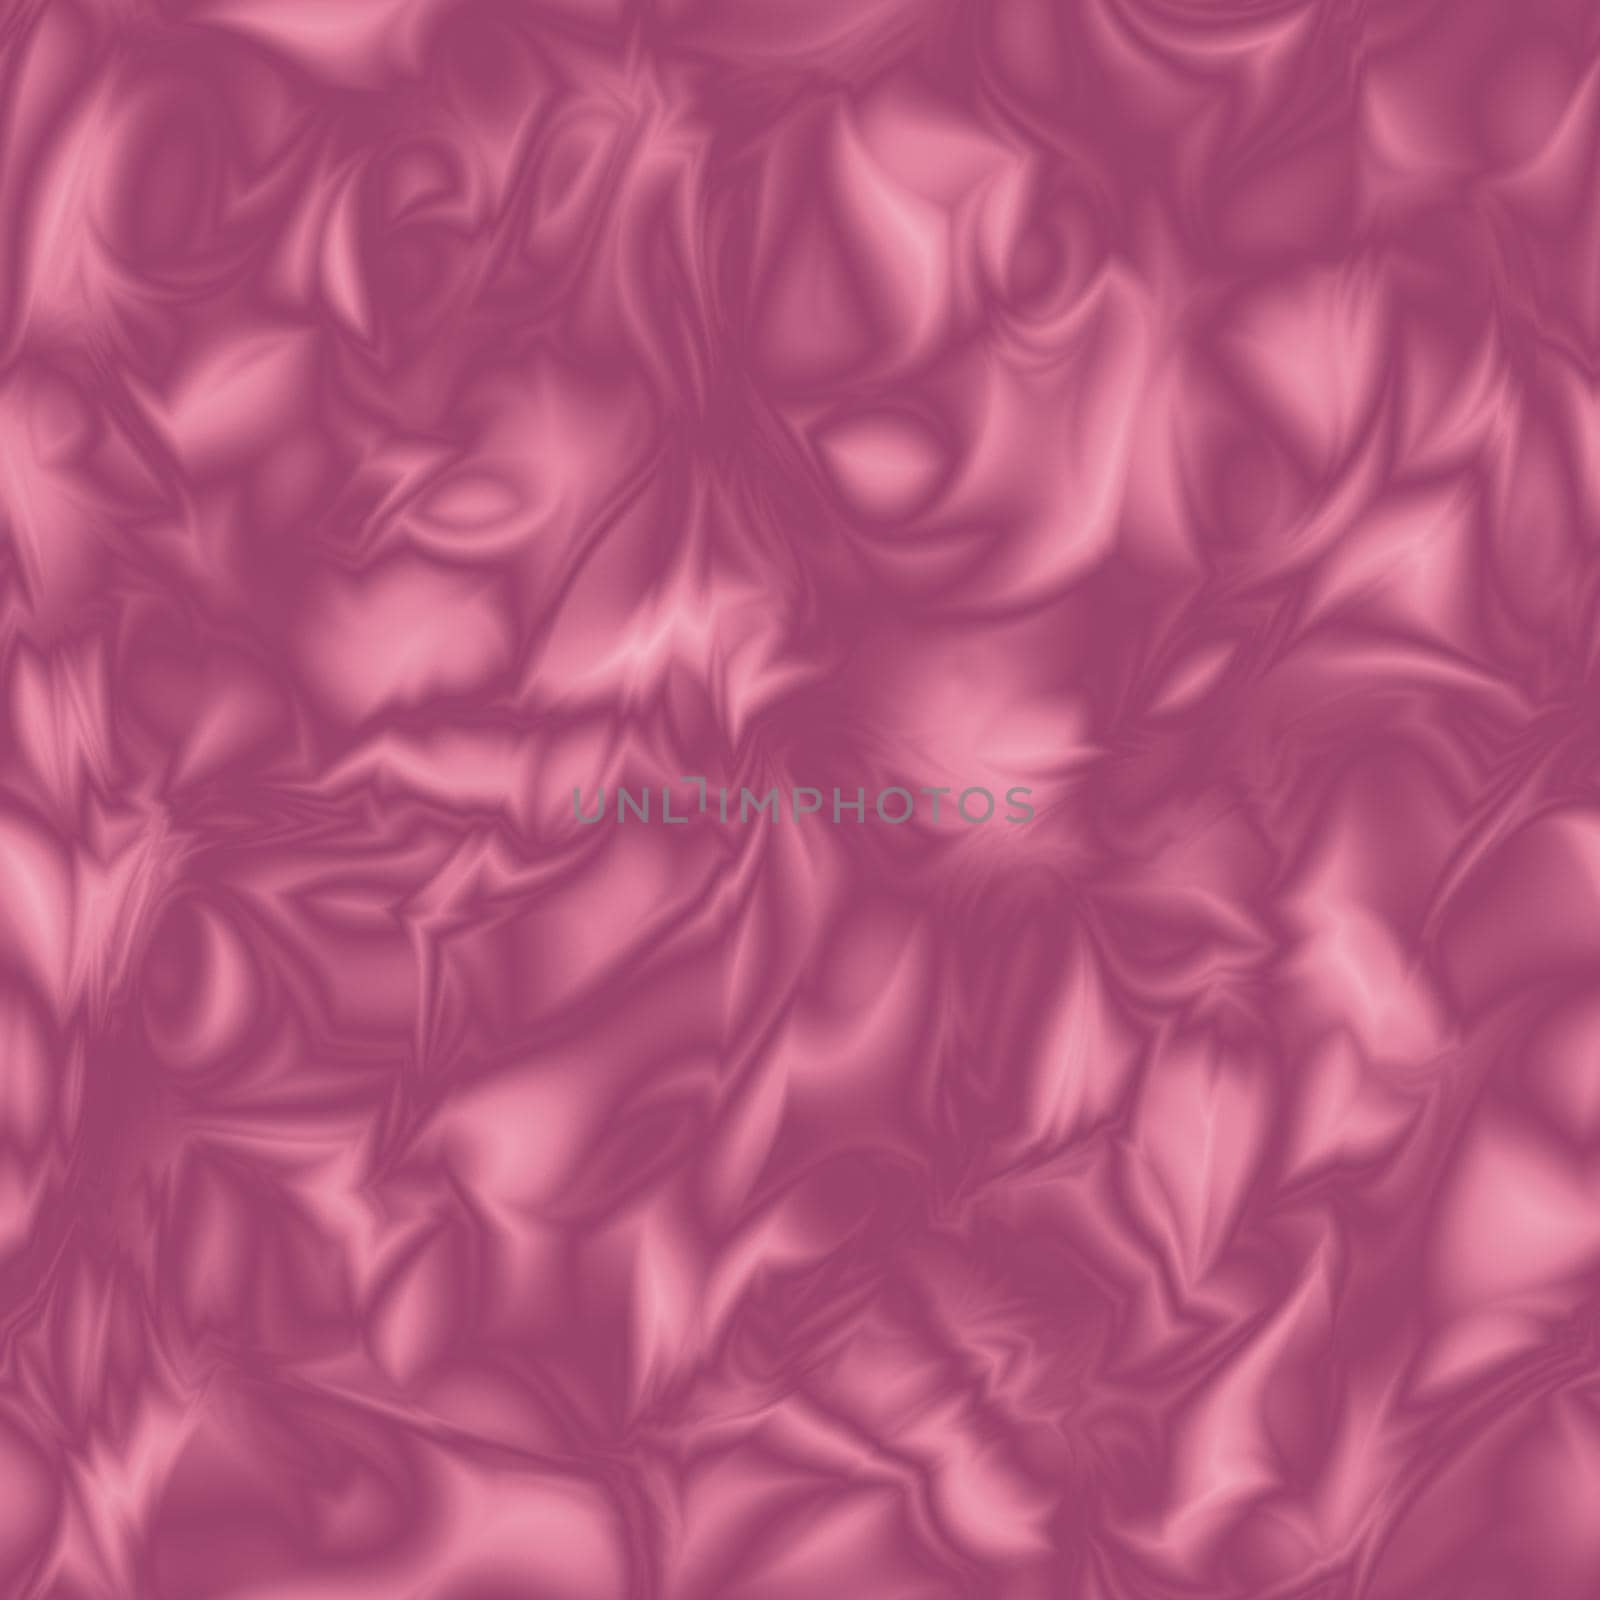 Deep pink glamorous fashion elegant silk textured pattern